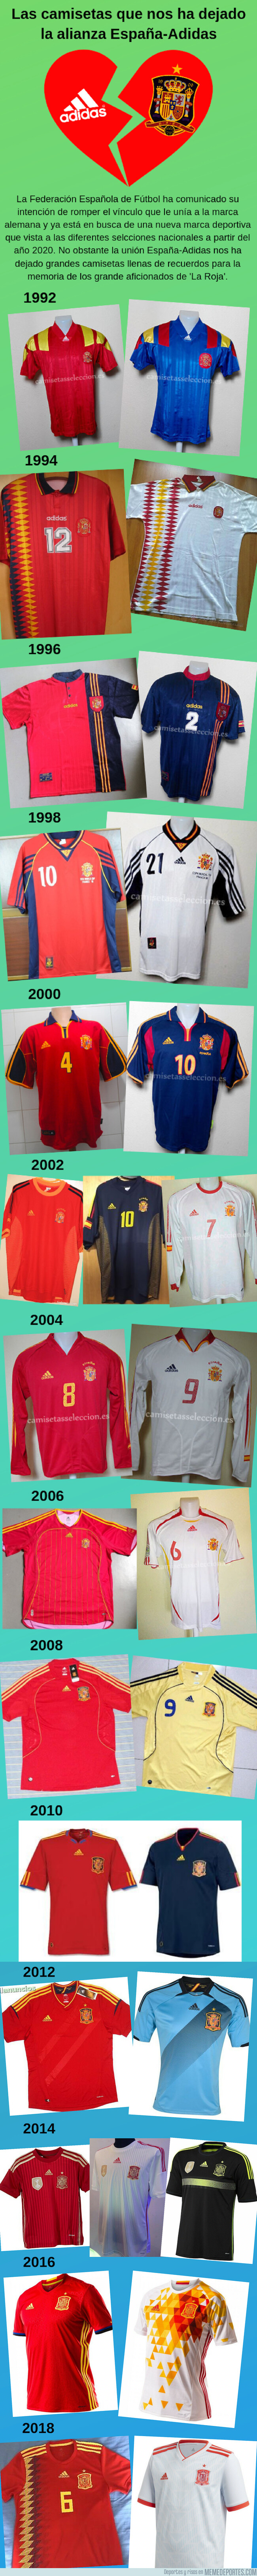 1076280 - Las camisetas Adidas que ha tenido la Selección los últimos años. ¿Cuál es tu preferida?